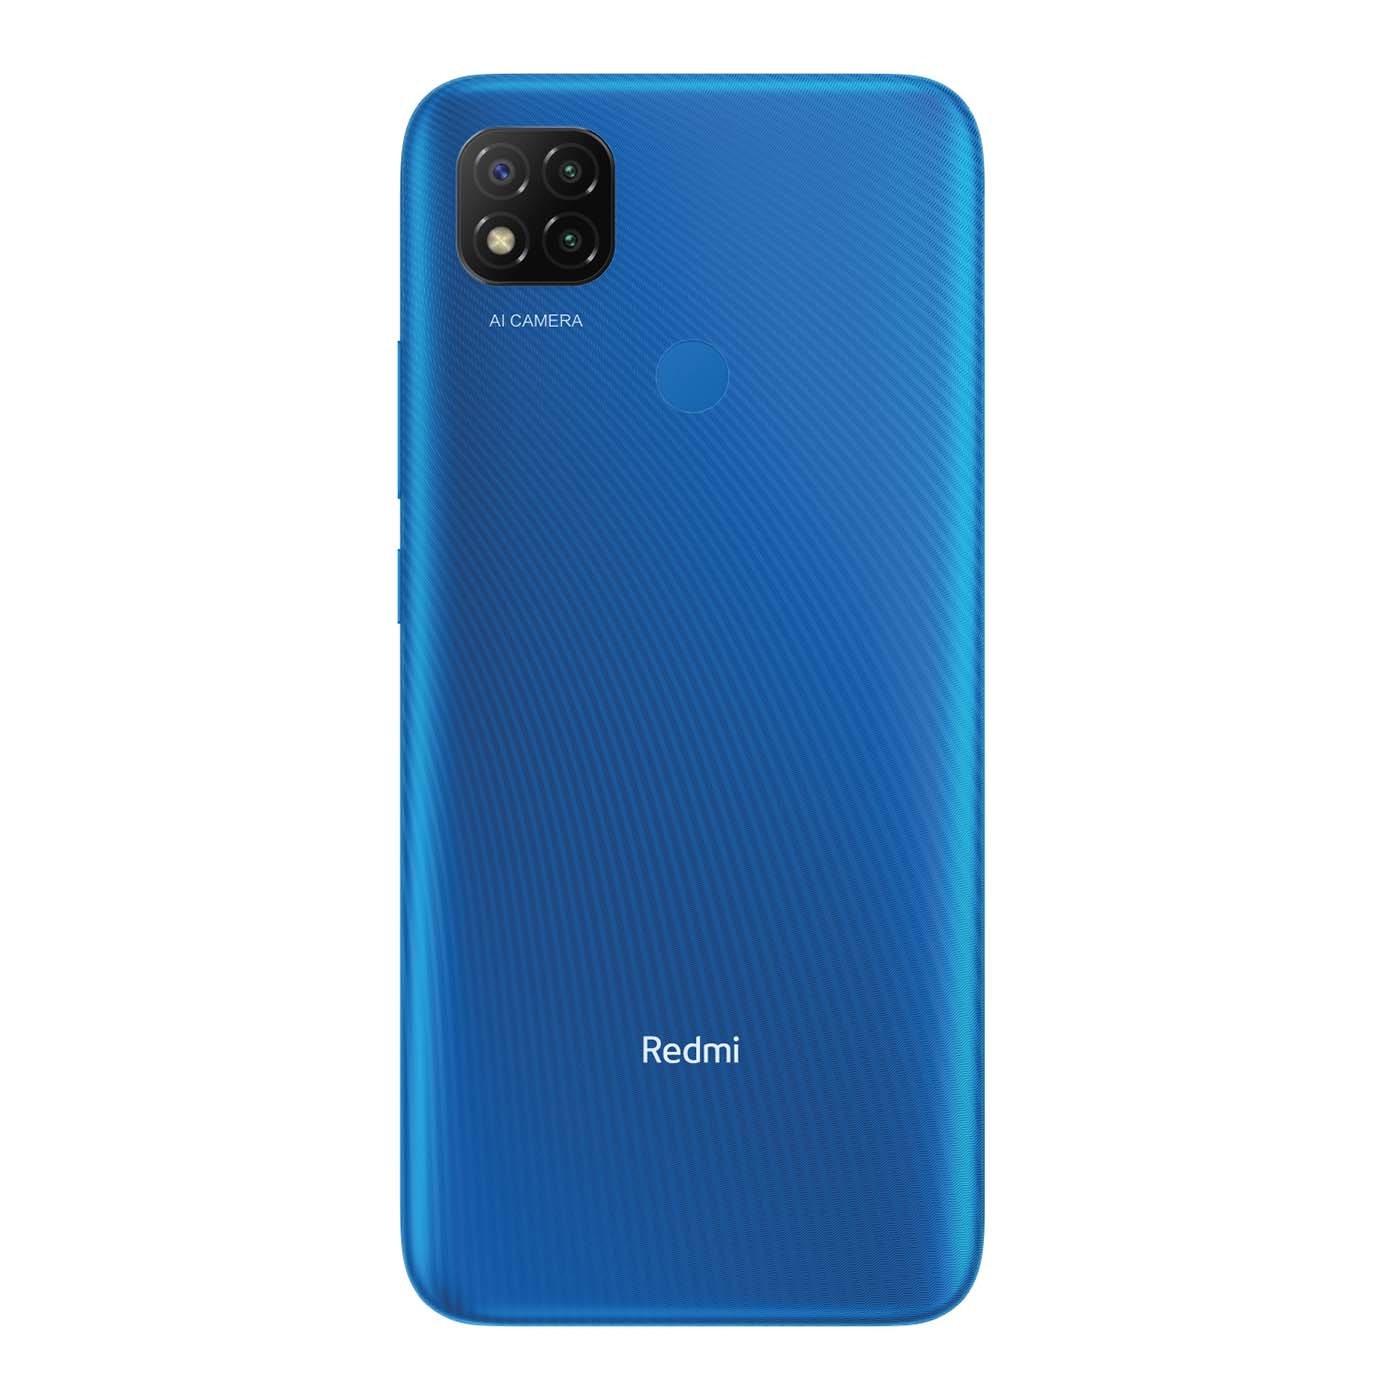 Celular XIAOMI REDMI 9C 64GB Azul